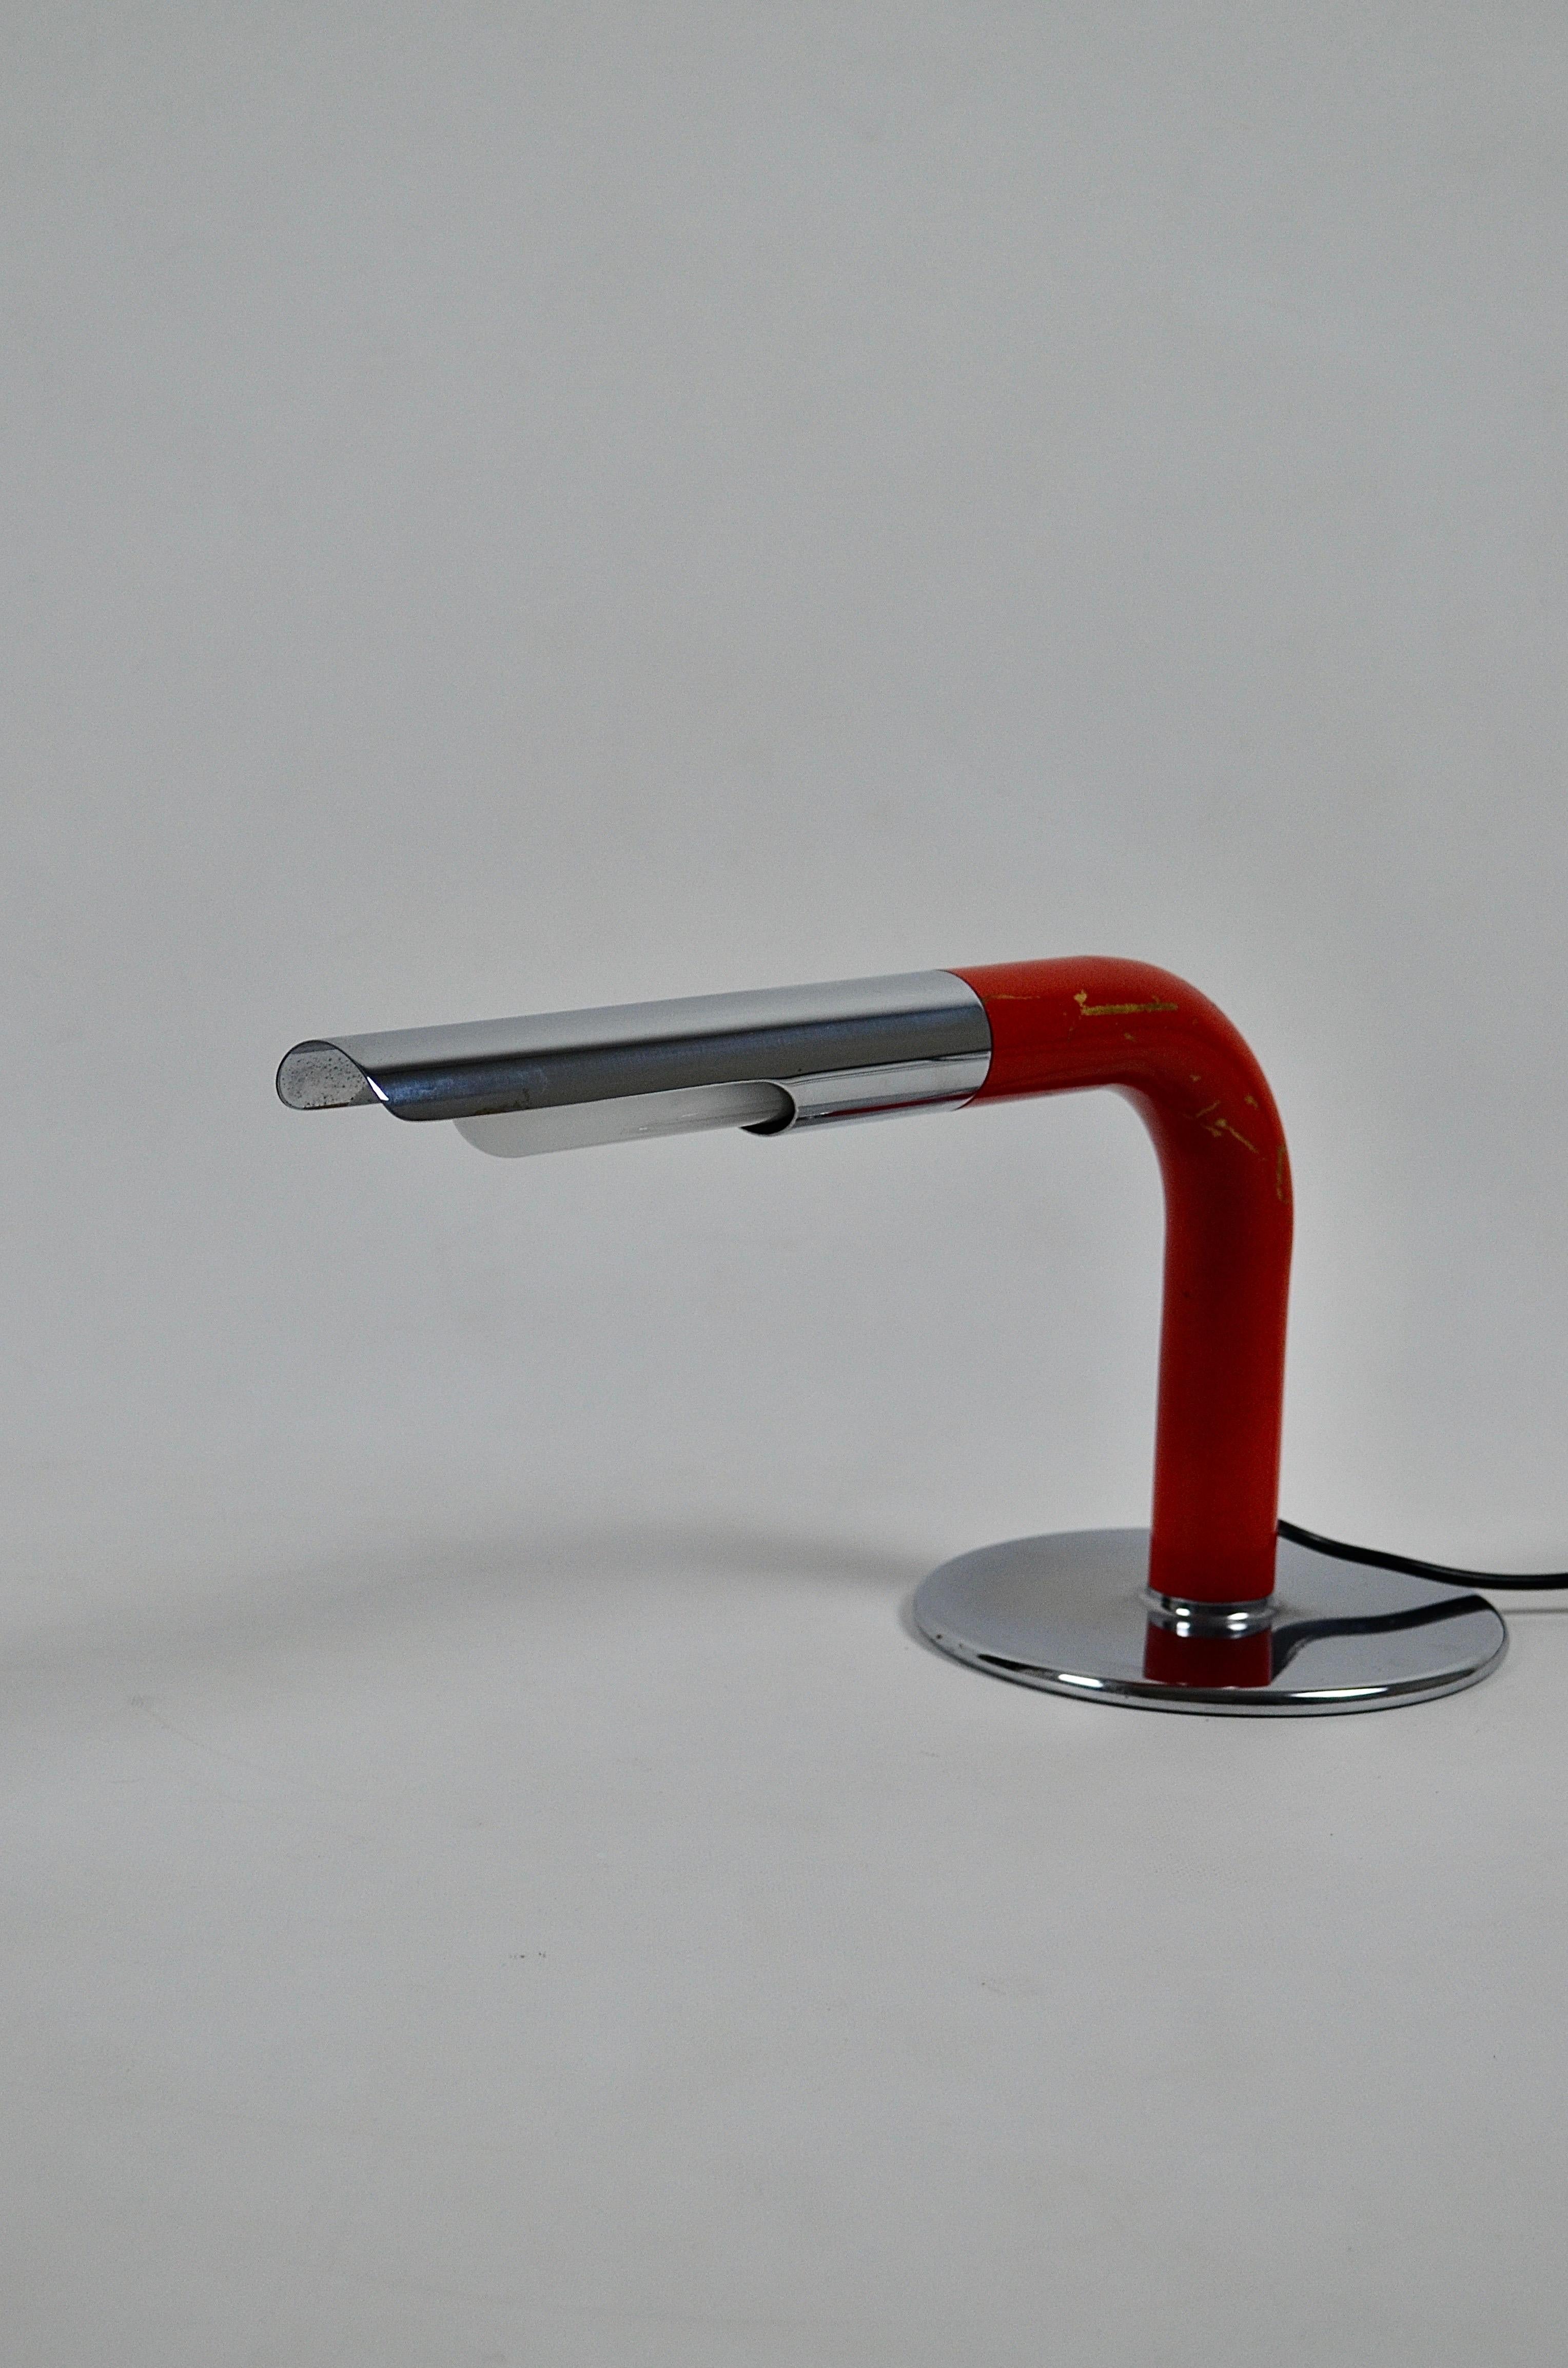 Die Gulp-Leuchte wurde von dem berühmten Lampendesigner Ingo Maurer in den 1960er Jahren entworfen. Die Form ist einfach und sehr elegant, sie besteht aus einem Rohr, das im 90-Grad-Winkel gebogen und am vorderen Ende aufgeschnitten ist. Darunter